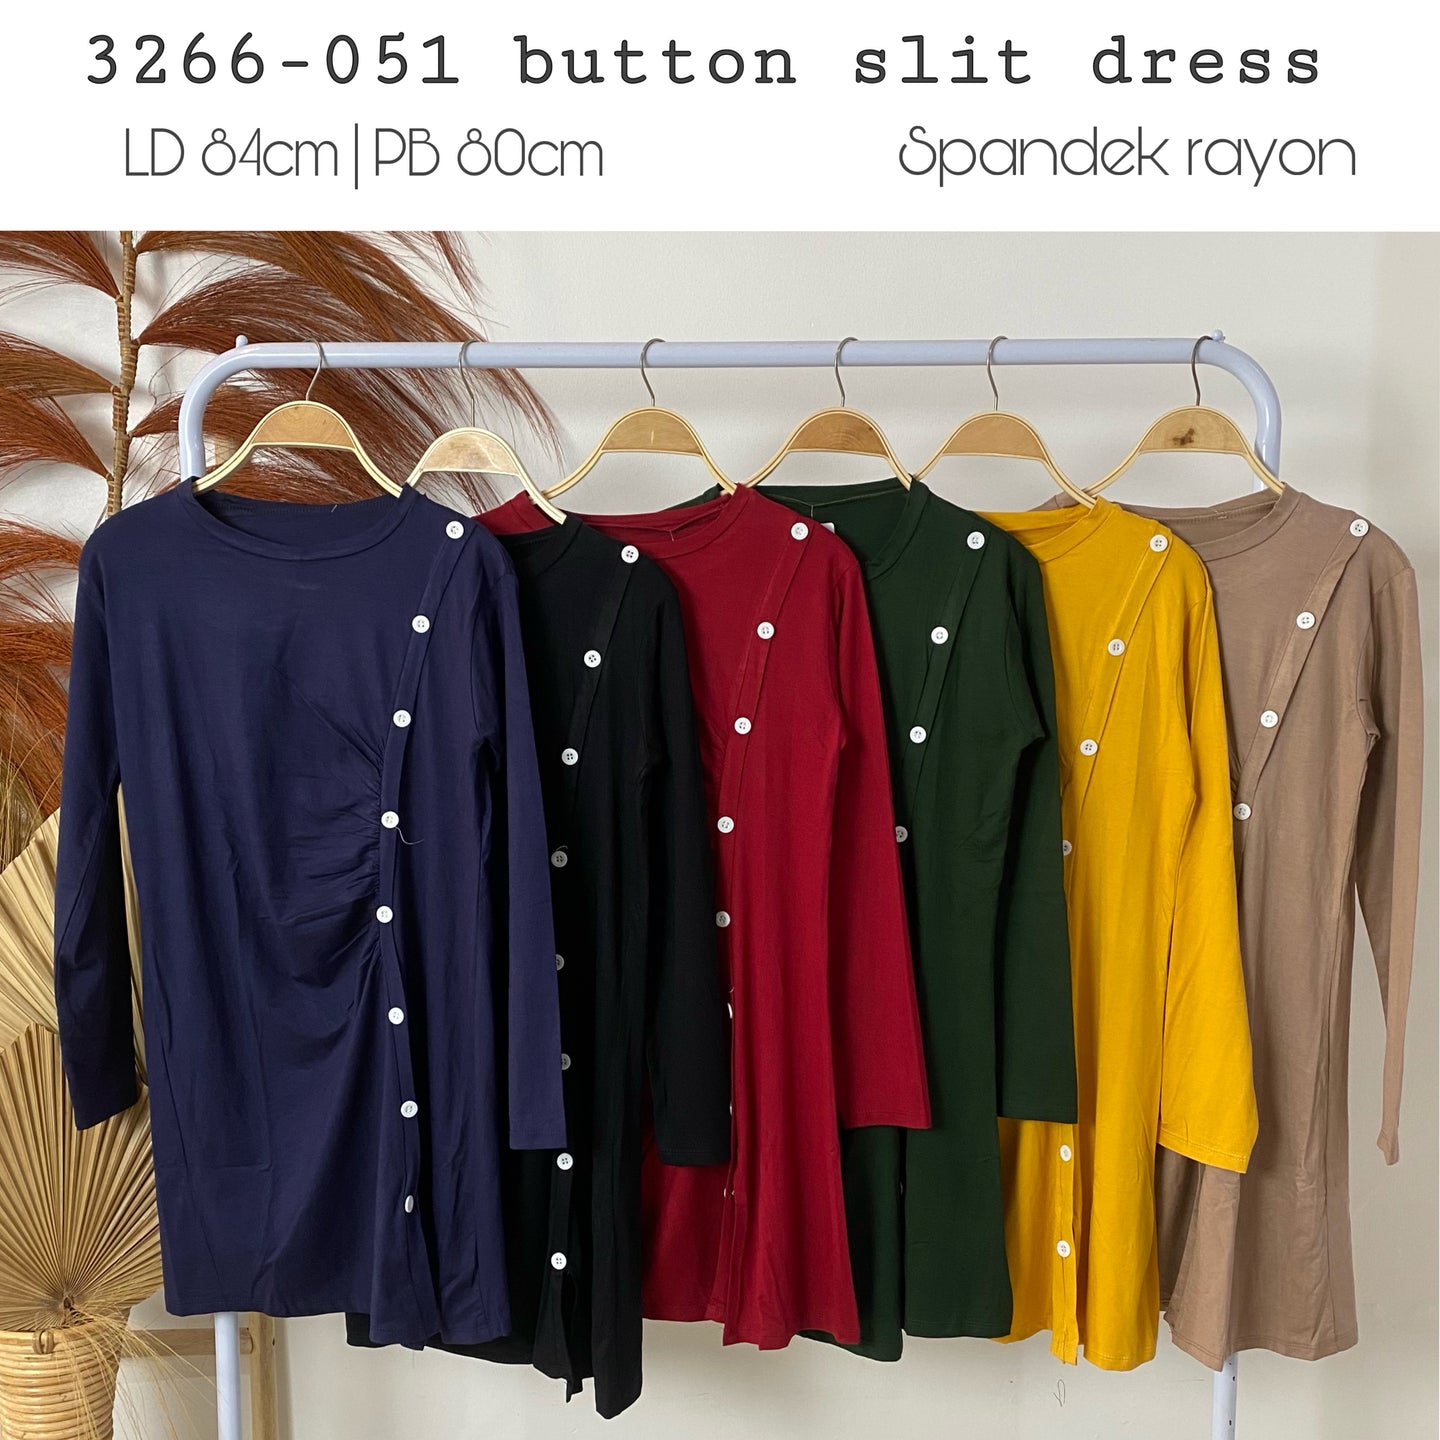 3266-051 Button dress